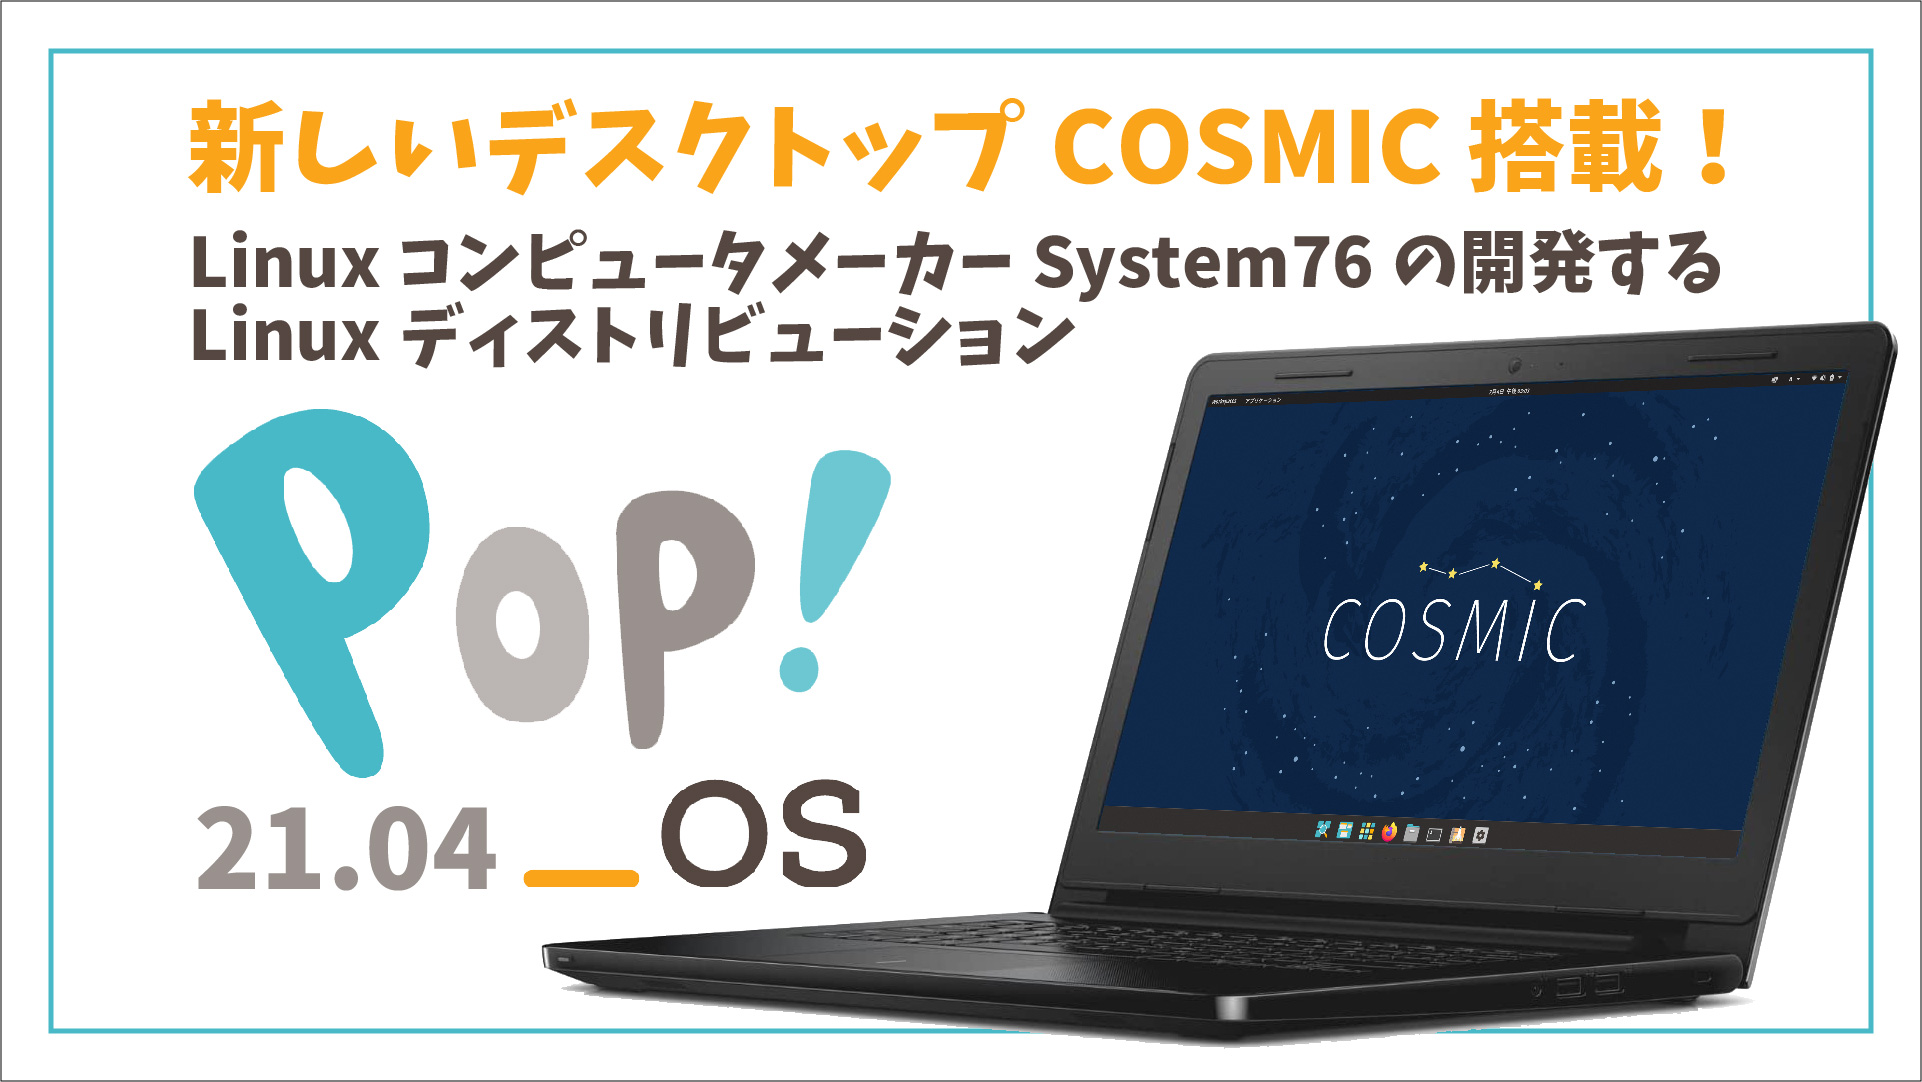 【人気 Linux】System76 の Pop!_OS 21.04 をインストールしてみた。気になる COSMIC ってどんな感じ？